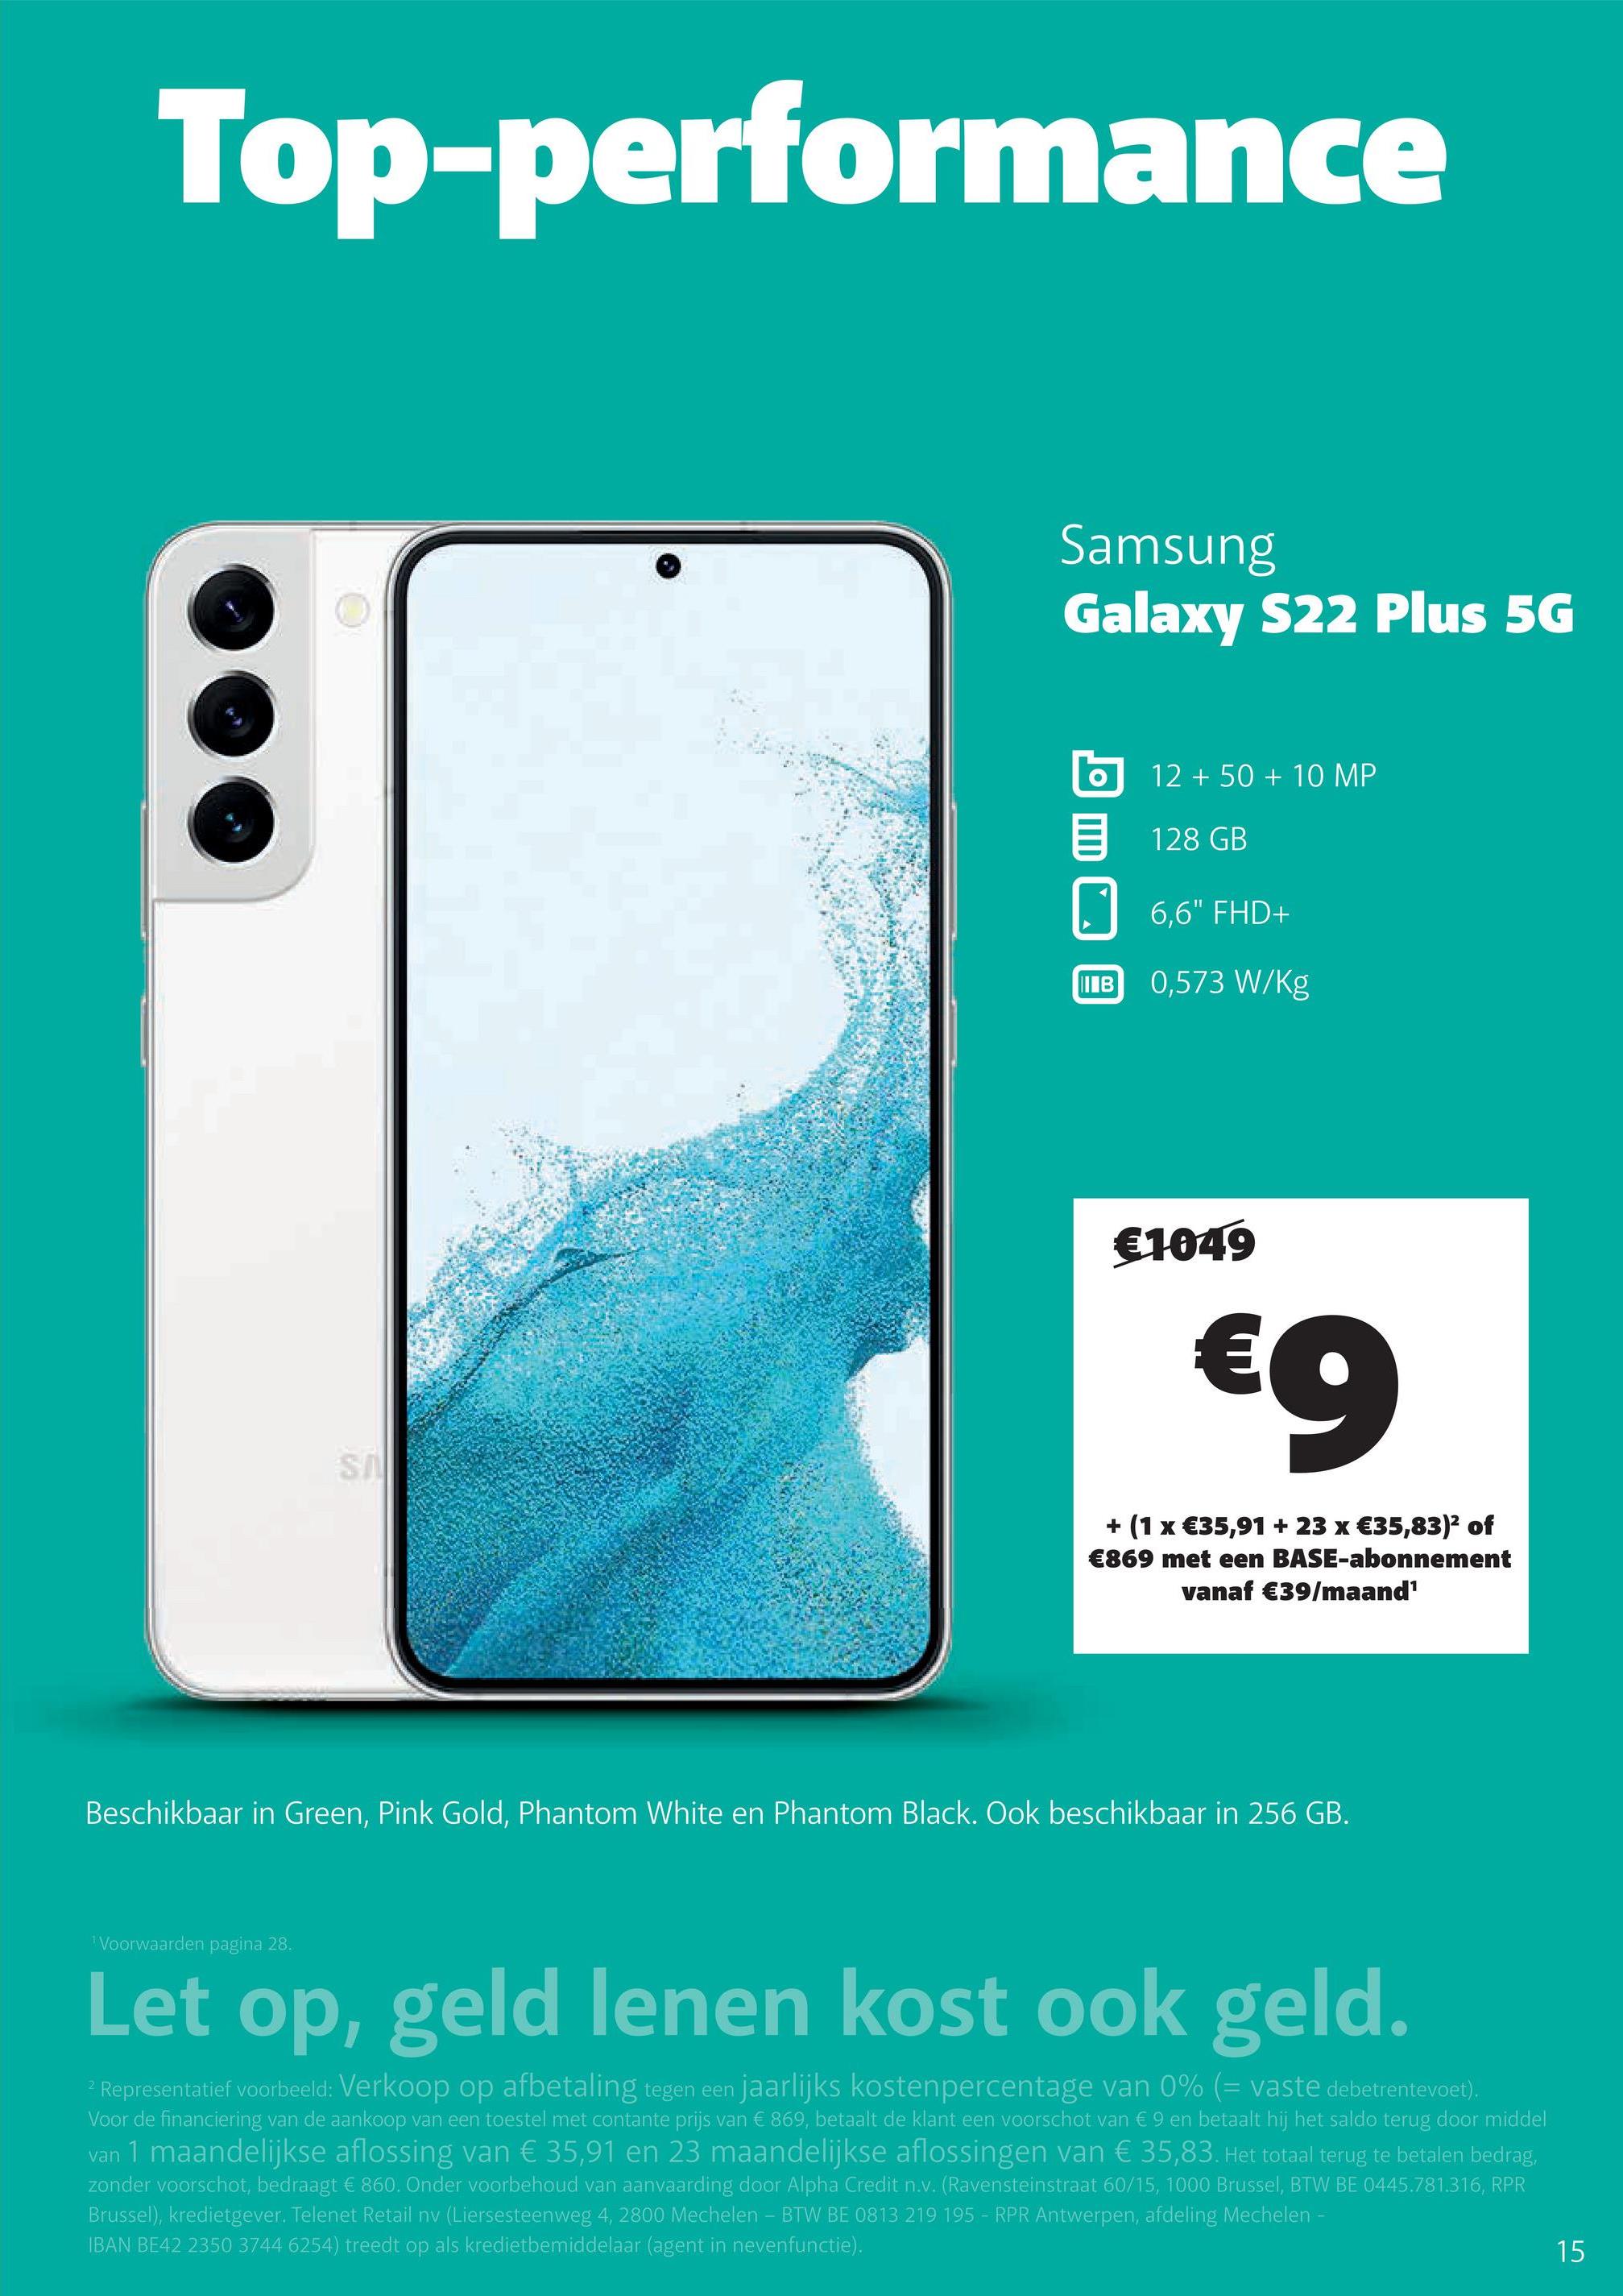 Top-performance
Samsung
Galaxy S22 Plus 5G
12 + 50 + 10 MP
128 GB
6,6" FHD+
IIIB
0,573 W/kg
€1049
€9
SA
+ (1 x €35,91 + 23 x €35,83)2 of
€869 met een BASE-abonnement
vanaf €39/maand'
Beschikbaar in Green, Pink Gold, Phantom White en Phantom Black. Ook beschikbaar in 256 GB.
Voorwaarden pagina 28.
Let op, geld lenen kost ook geld.
2 Representatief voorbeeld: Verkoop op afbetaling tegen een jaarlijks kostenpercentage van 0% (= vaste debetrentevoet).
Voor de financiering van de aankoop van een toestel met contante prijs van € 869, betaalt de klant een voorschot van € 9 en betaalt hij het saldo terug door middel
van 1 maandelijkse aflossing van € 35,91 en 23 maandelijkse aflossingen van € 35,83. Het totaal terug te betalen bedrag,
zonder voorschot, bedraagt € 860. Onder voorbehoud van aanvaarding door Alpha Credit n.v. (Ravensteinstraat 60/15, 1000 Brussel, BTW BE 0445.781.316, RPR
Brussel), kredietgever. Telenet Retail nv (Liersesteenweg 4, 2800 Mechelen - BTW BE 0813 219 195 - RPR Antwerpen, afdeling Mechelen -
IBAN BE42 2350 3744 6254) treedt op als kredietbemiddelaar (agent in nevenfunctie).
15
